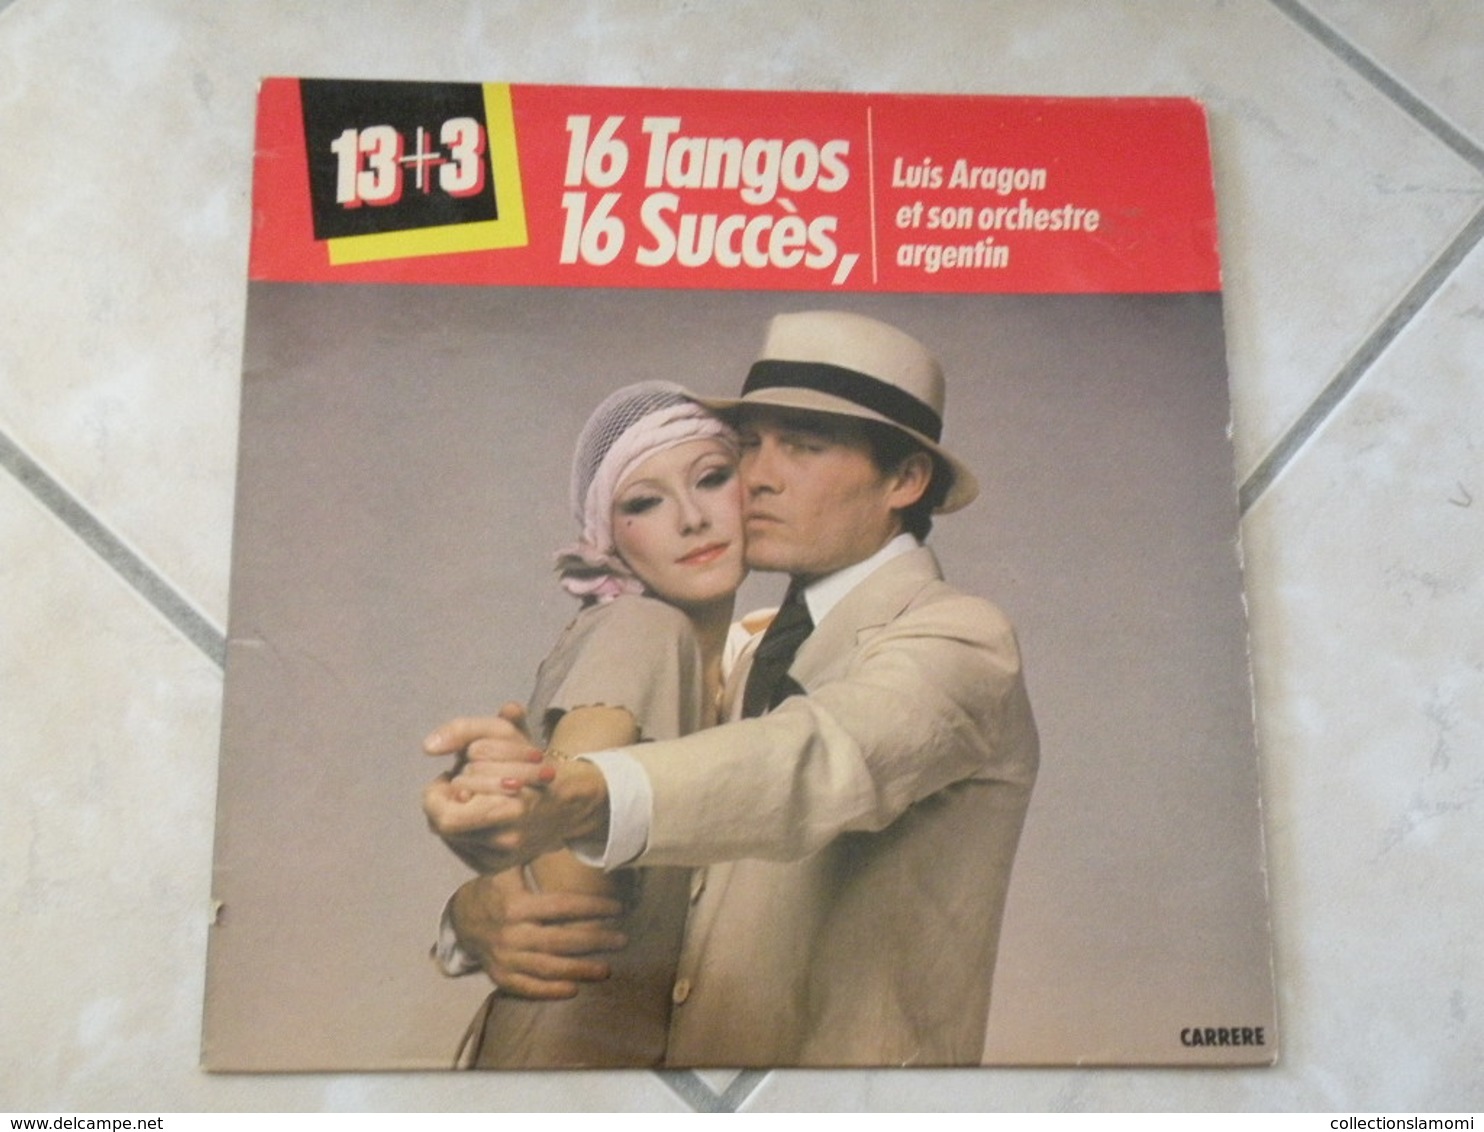 Luis Aragon Et Son Orchestre Argentin (16 Tangos) - (Titres Sur Photos) - Vinyle 33 T LP - Humor, Cabaret